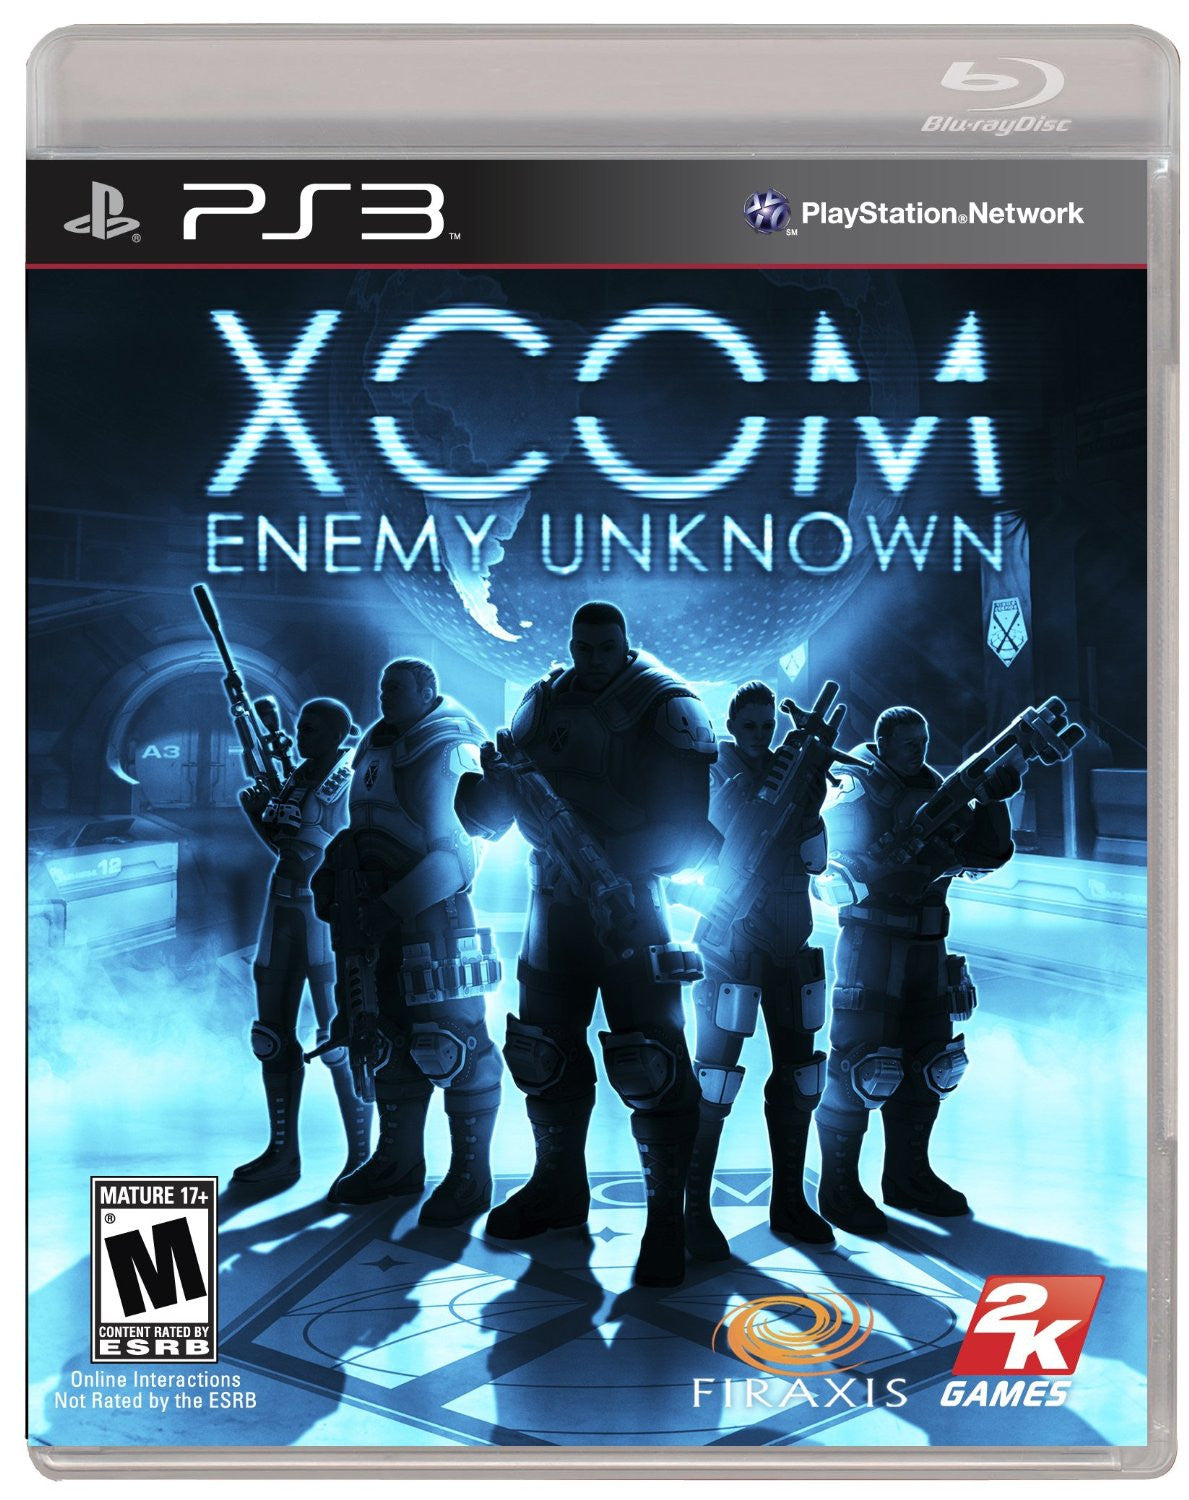 XCOM: Enemy Unknown - Playstation 3